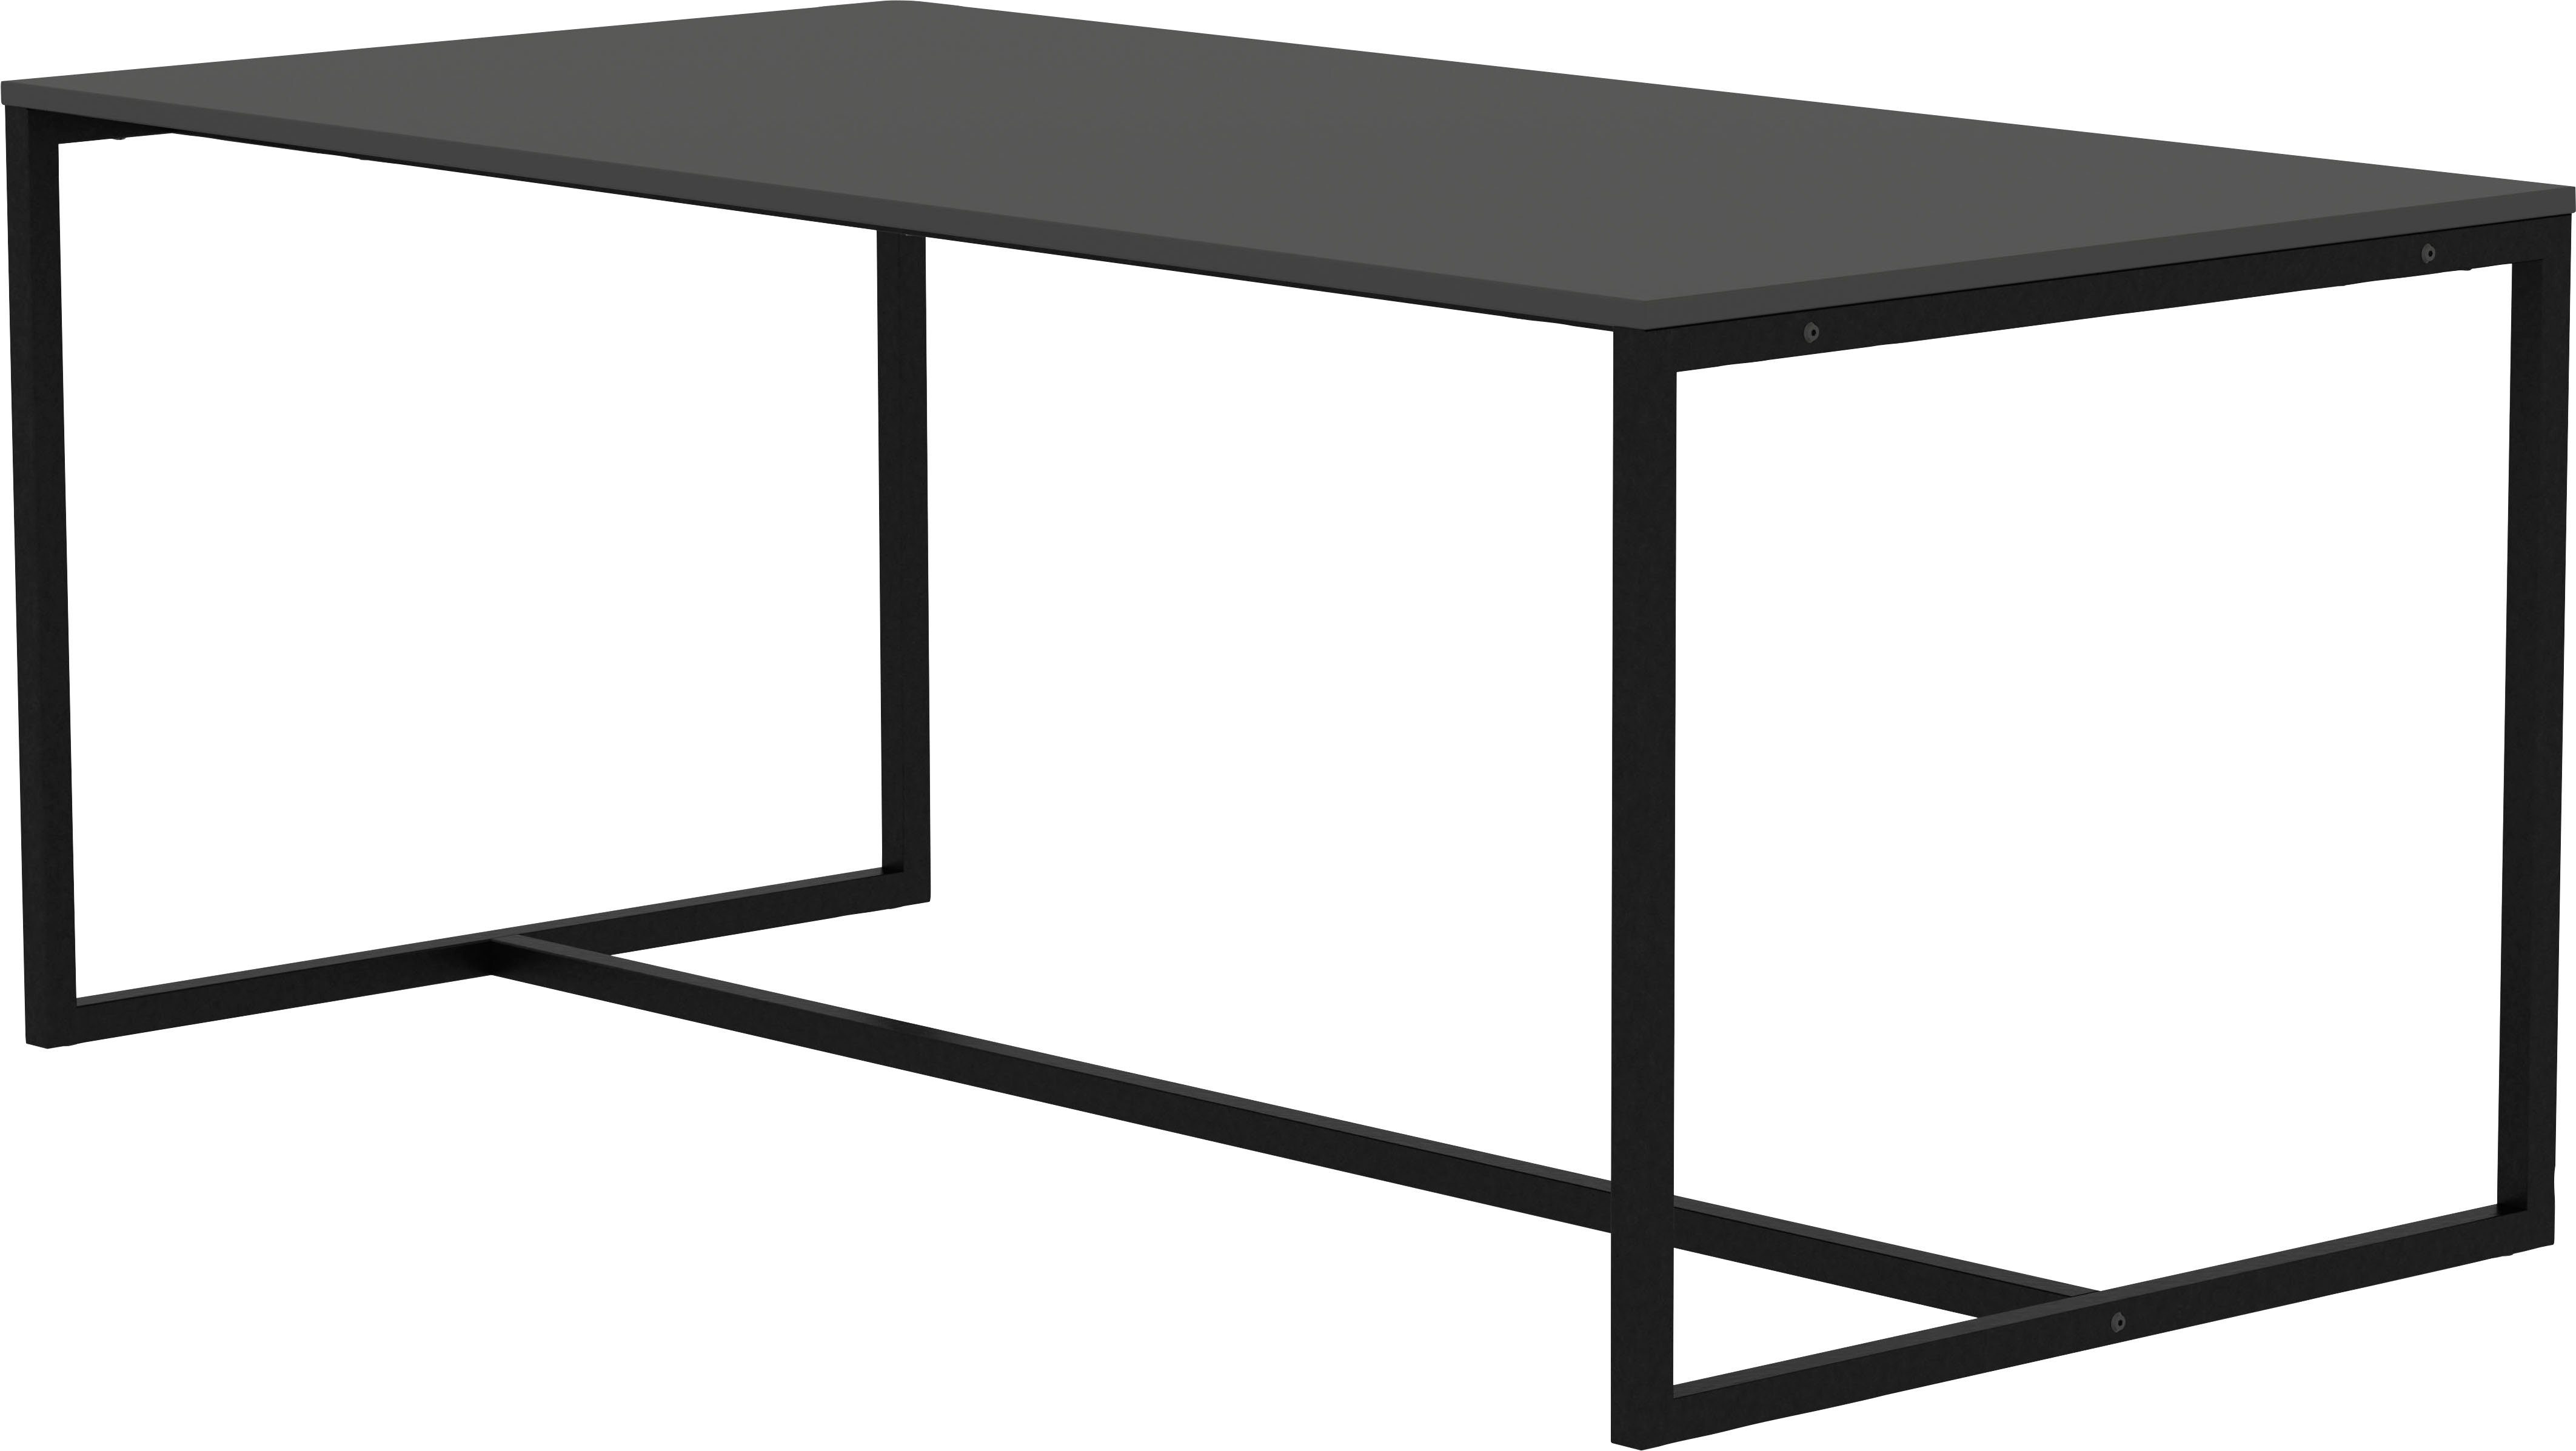 Tenzo Esstisch | cm von 180 LIPP, Design shadow shadow Tenzo Design Breite schwarz studio, schwarz